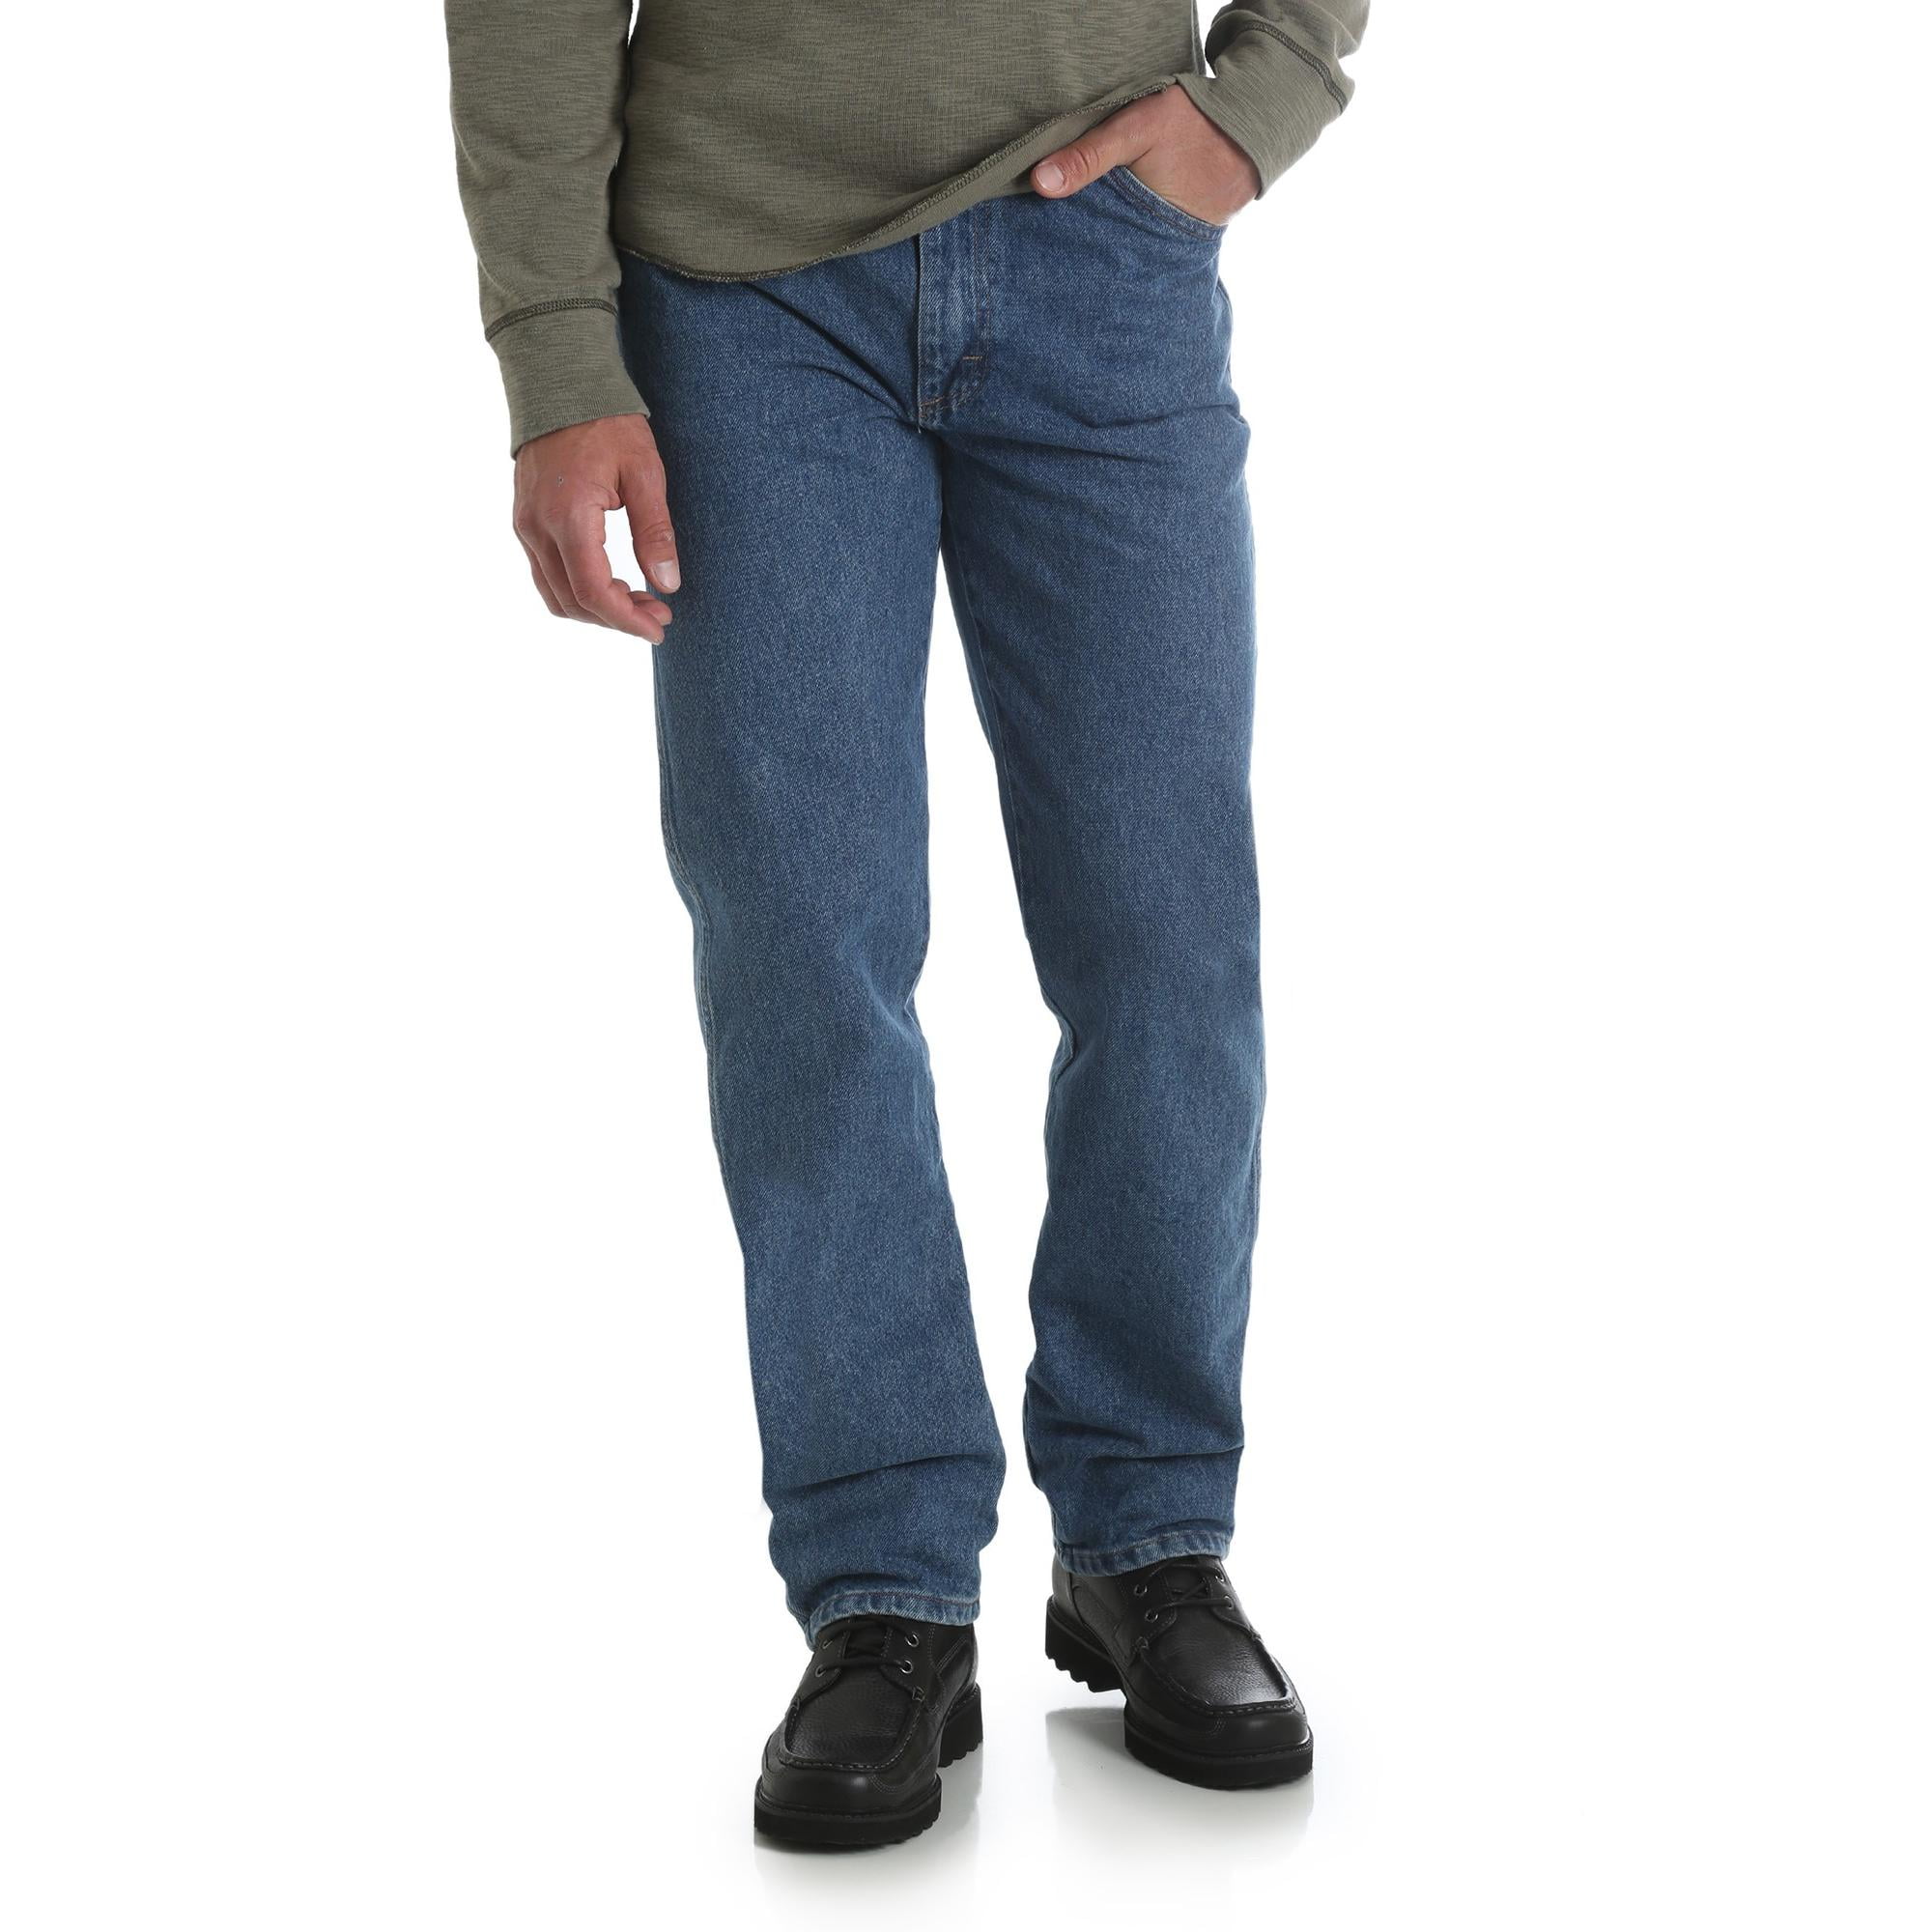 Men's and Big Men's Fit Jeans - Walmart.com